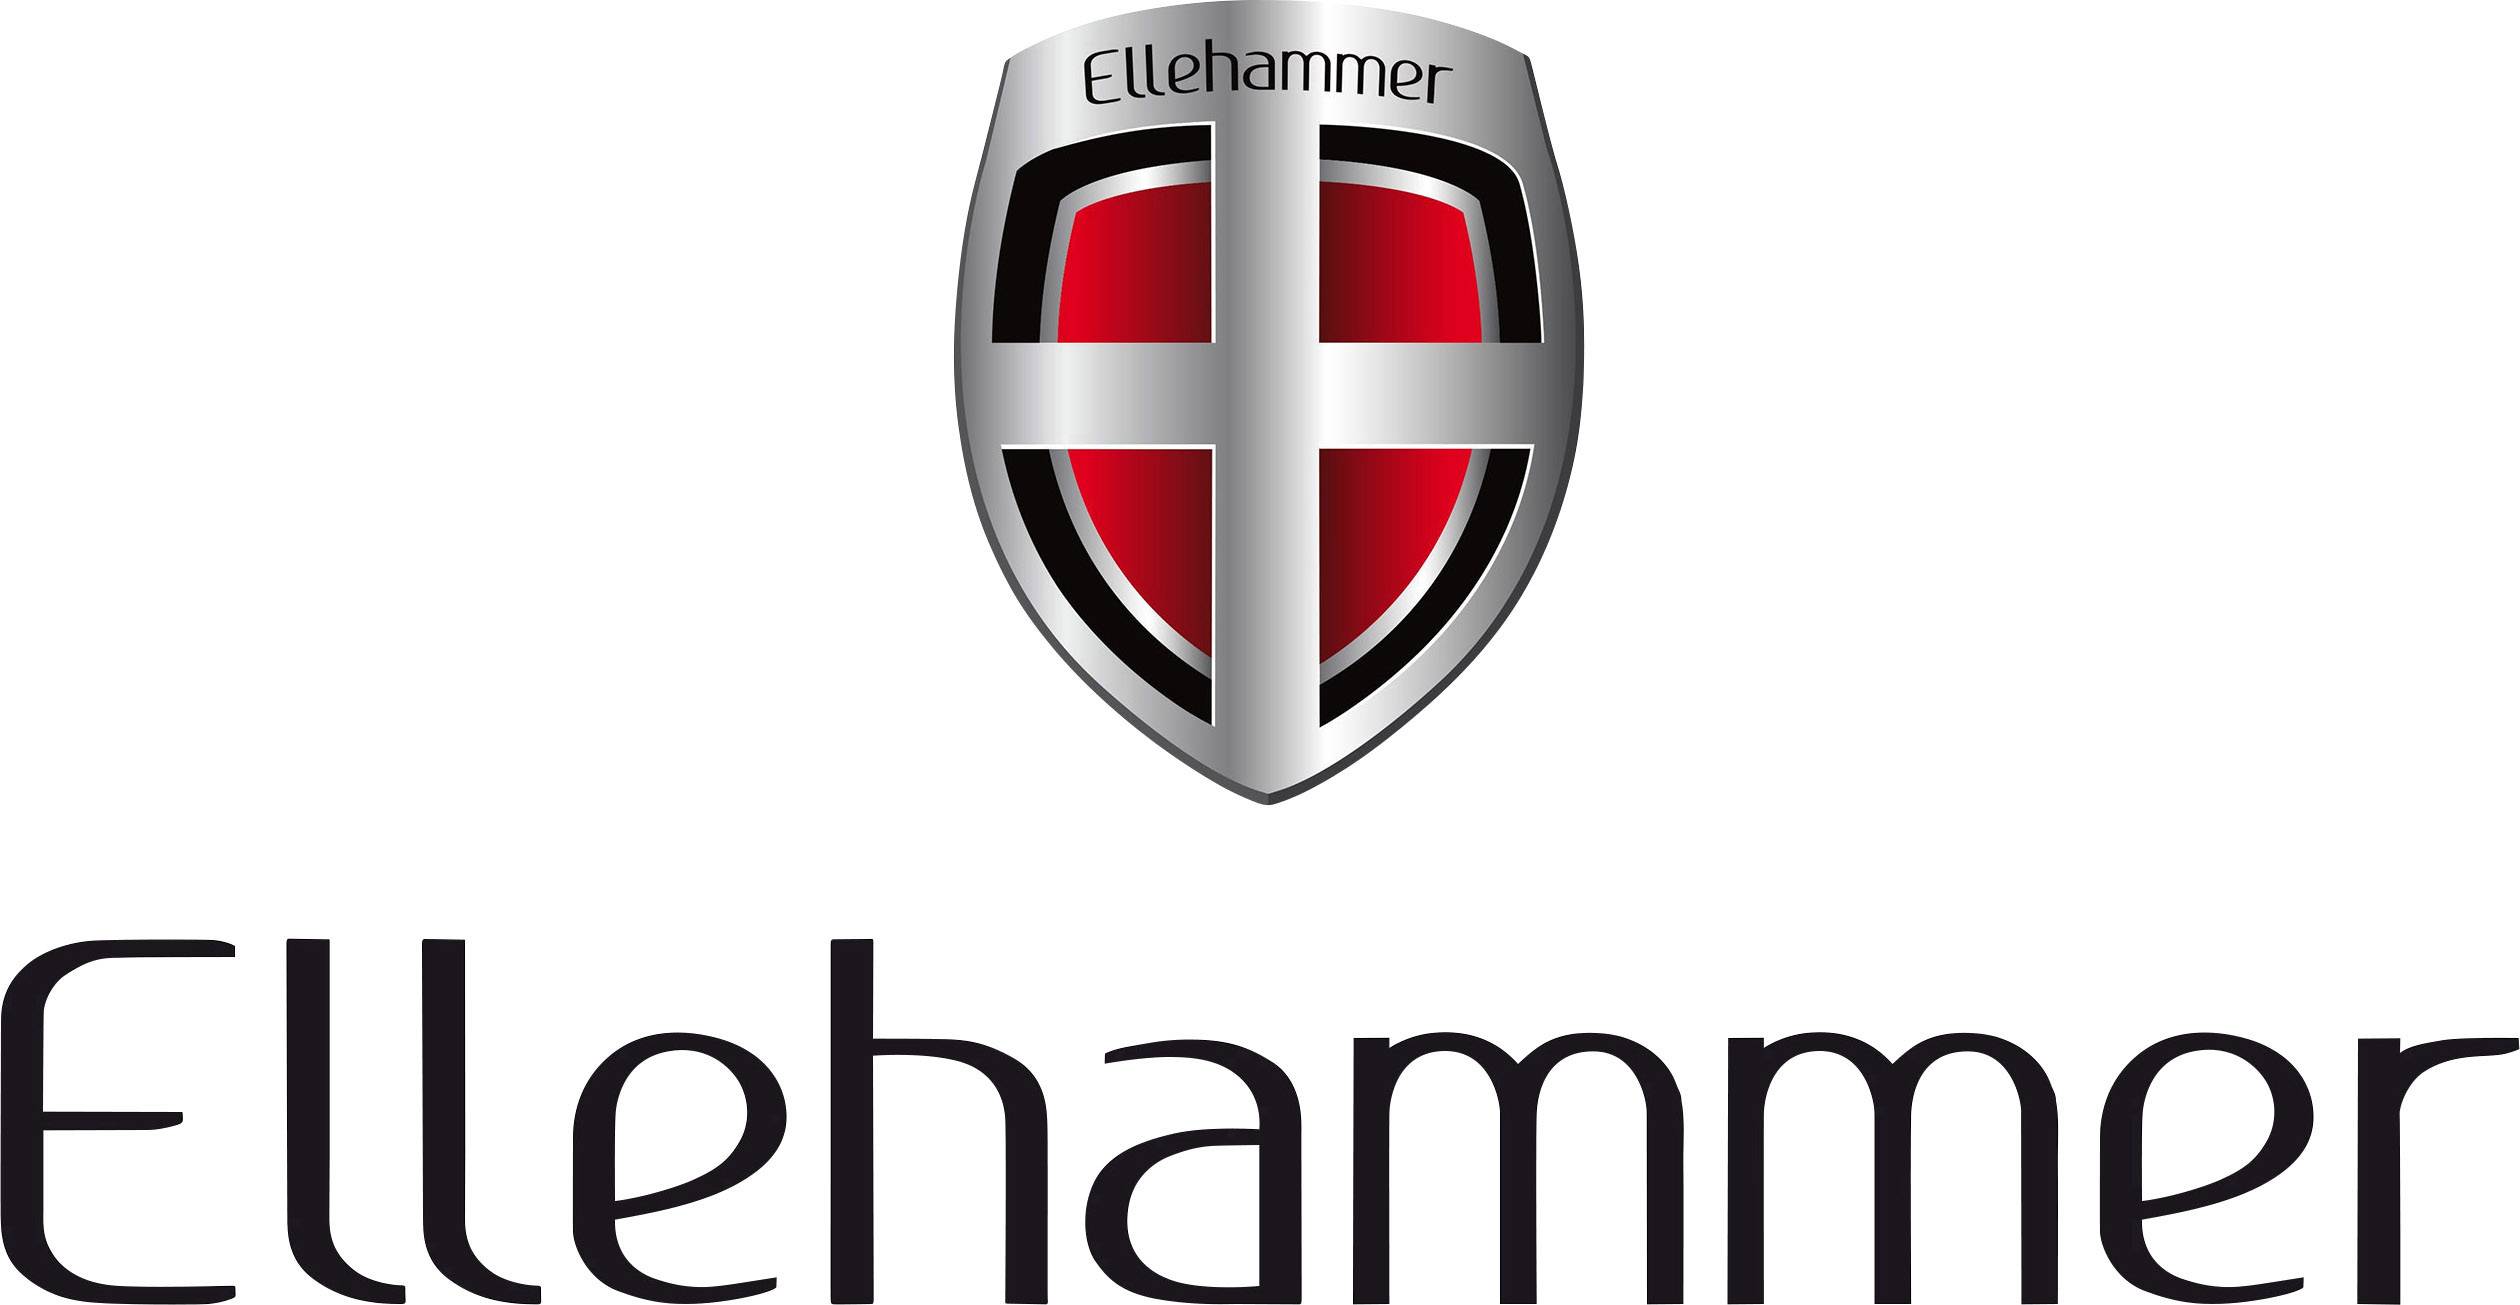 Ellehammer Logo - Ellehammer N A. Zamów W Conrad.pl